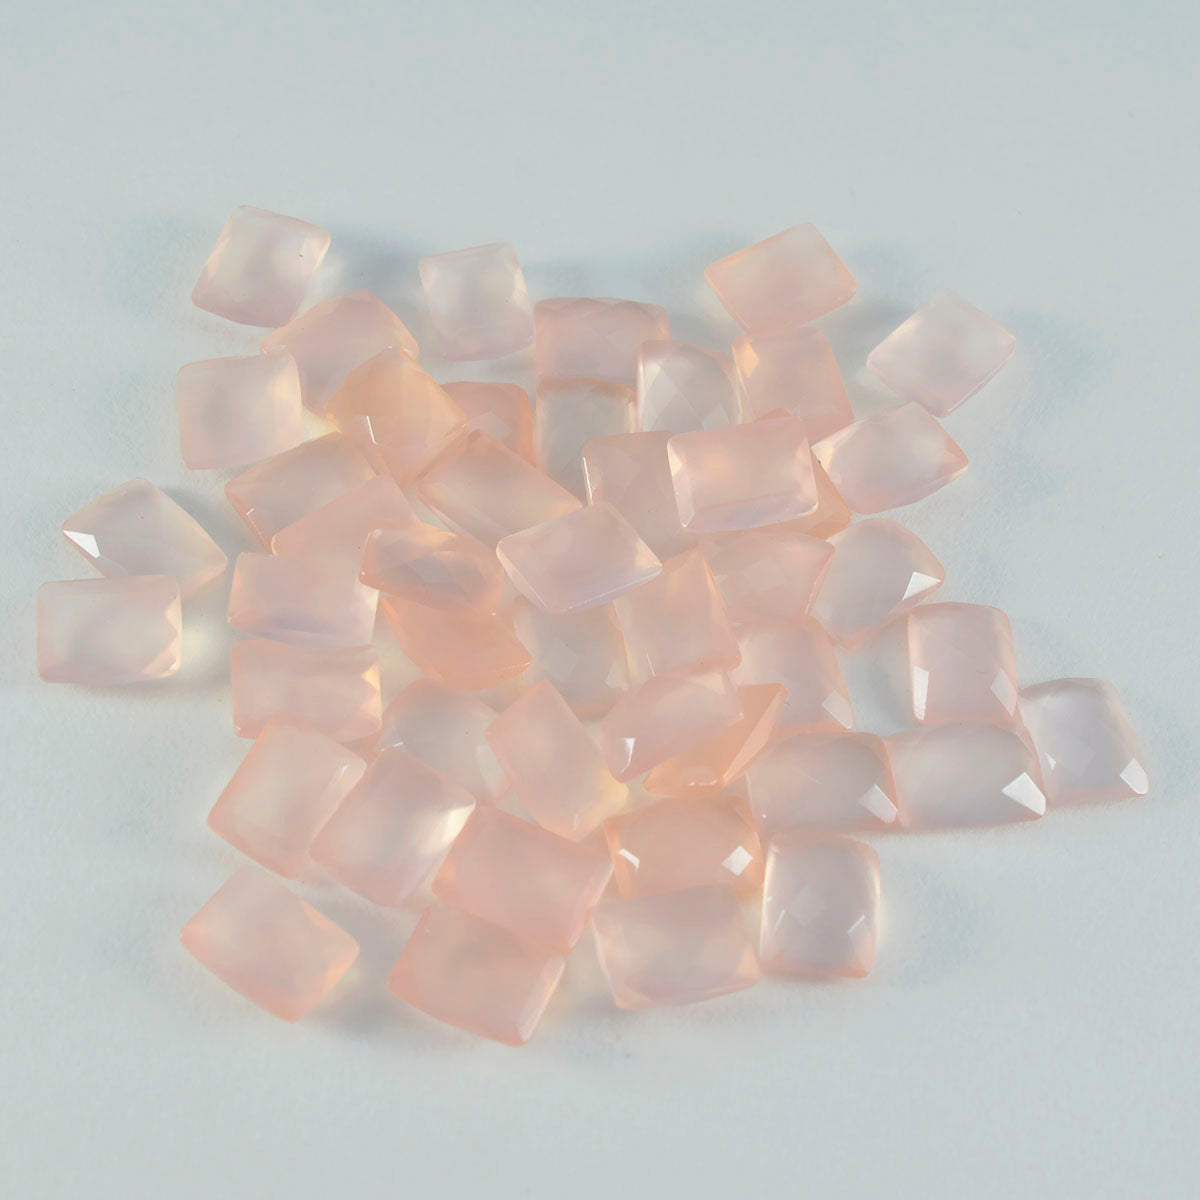 riyogems 1 шт. розовый кварц ограненный 3x5 мм восьмиугольная форма драгоценный камень замечательного качества